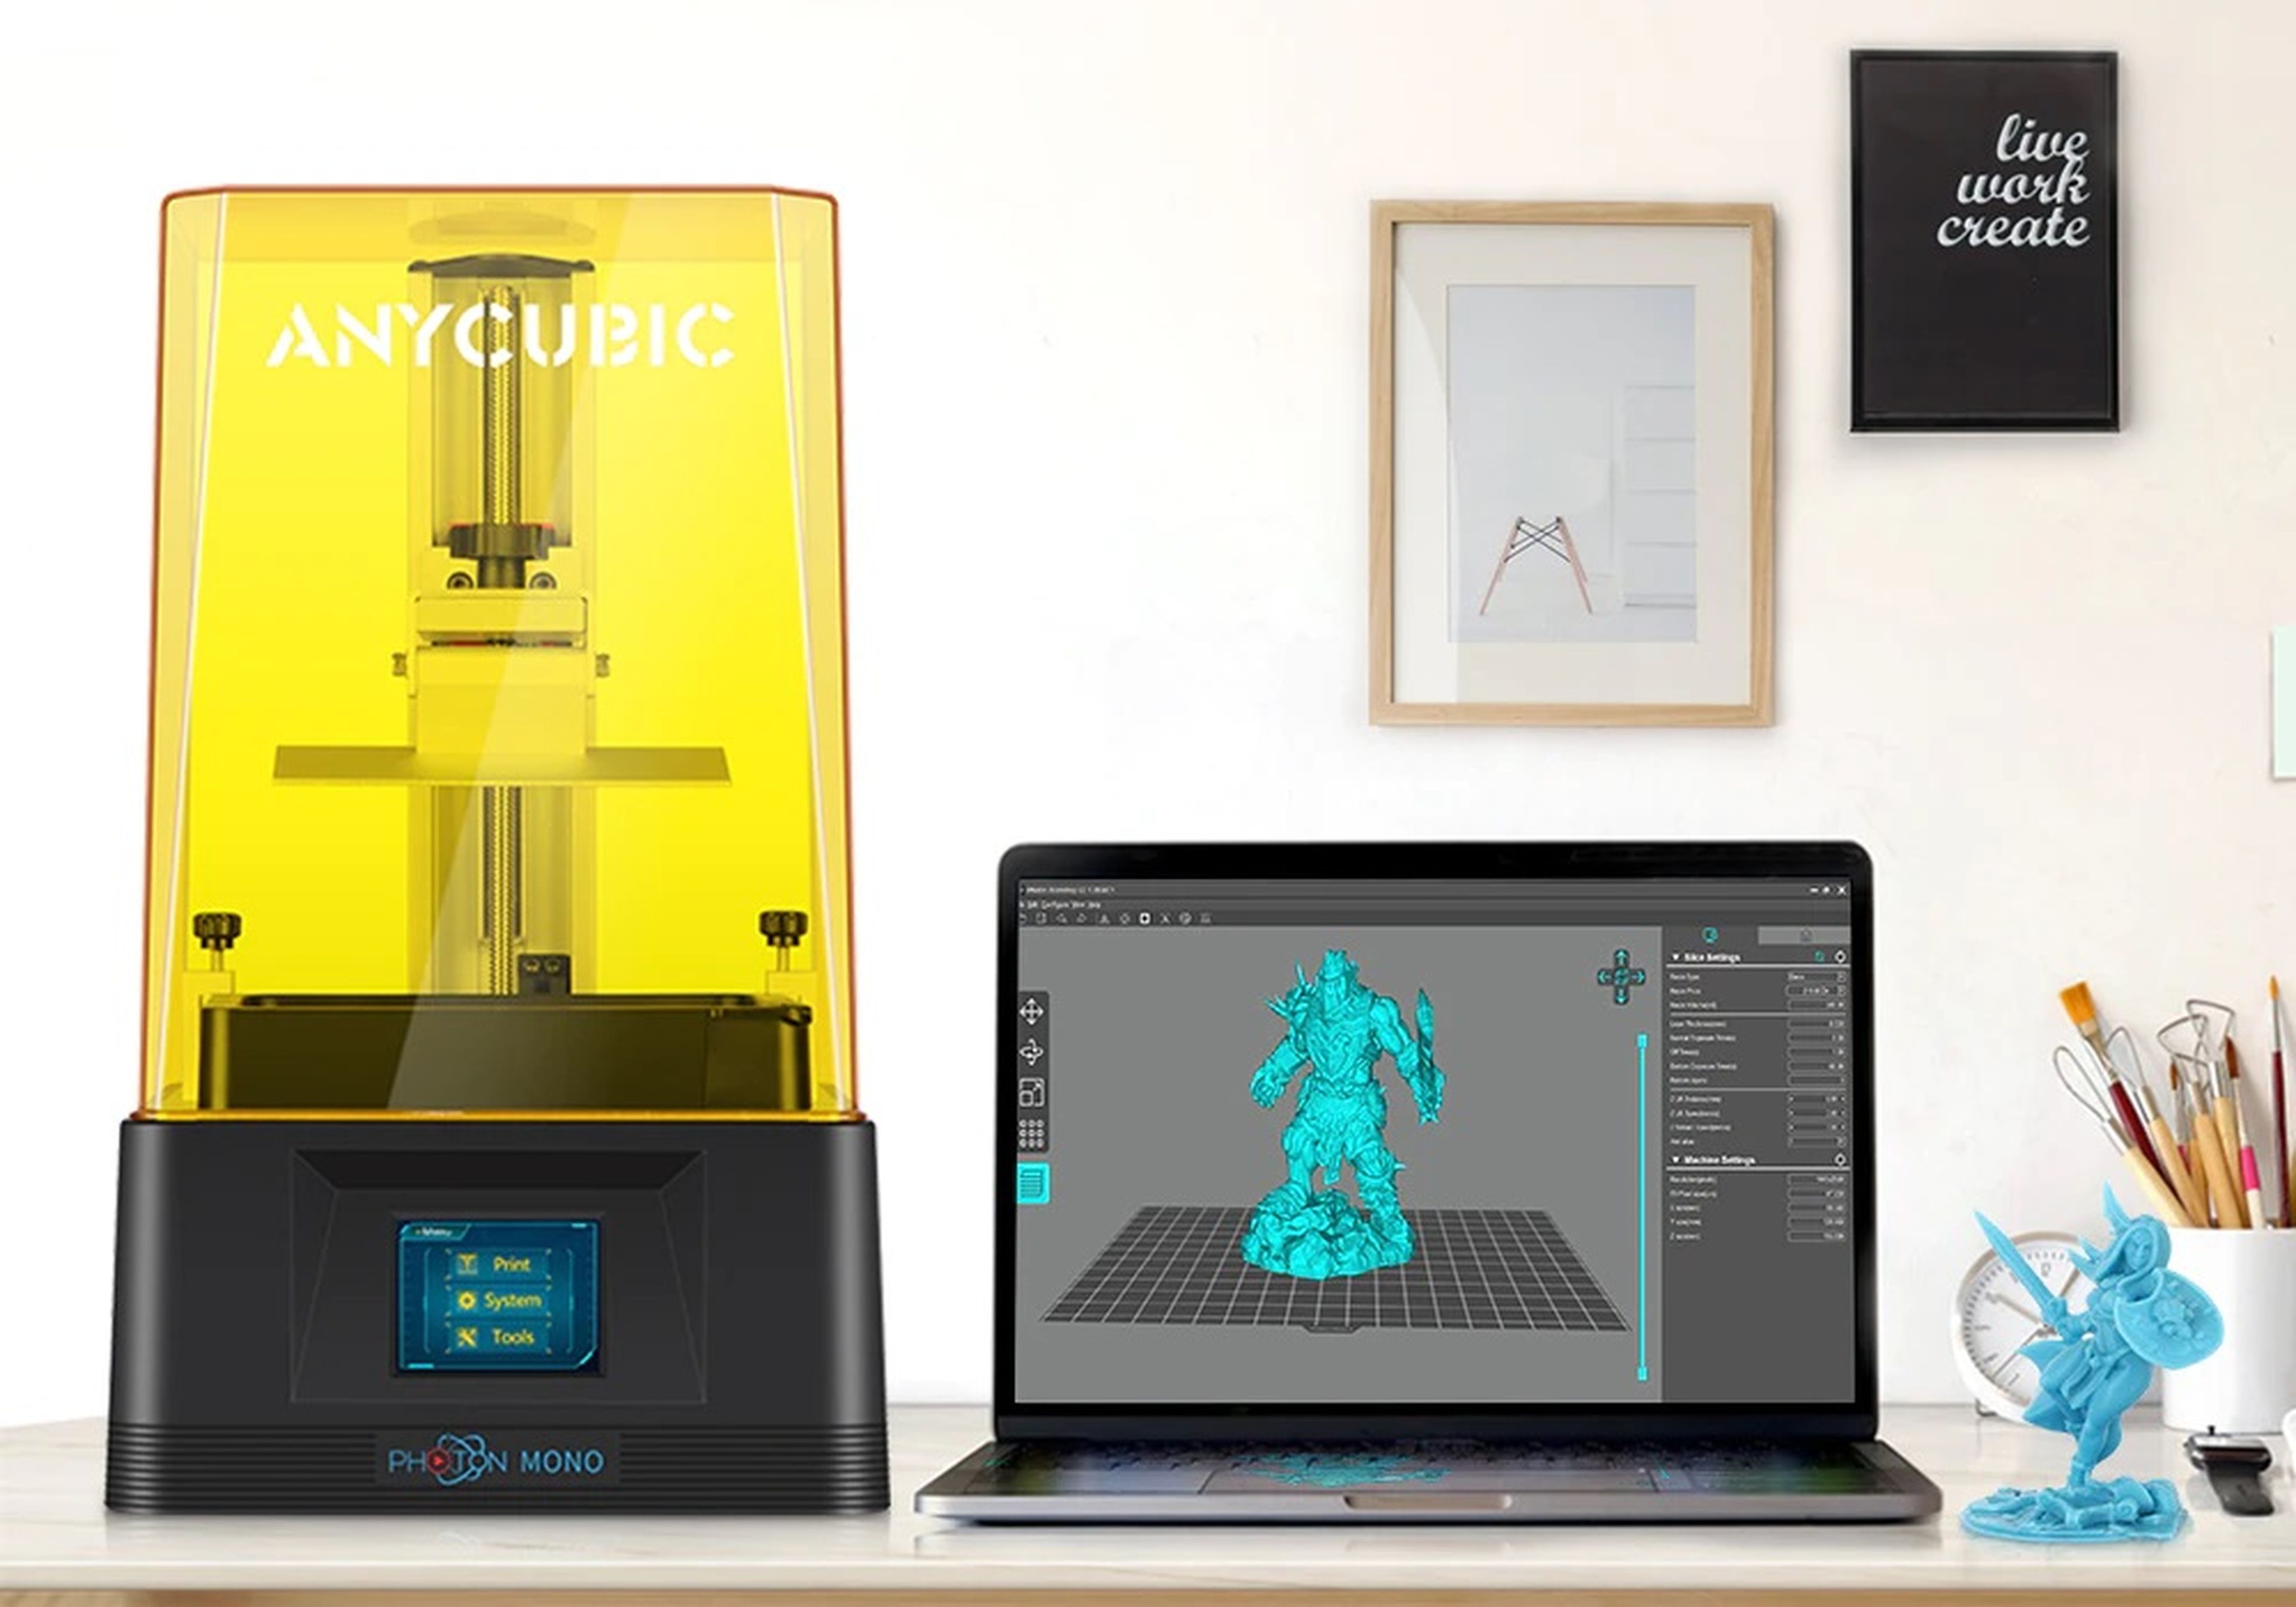 Esta impresora 3D de resina para imprimir tus propios objetos tiene un descuento del 49%, vale menos de 200€